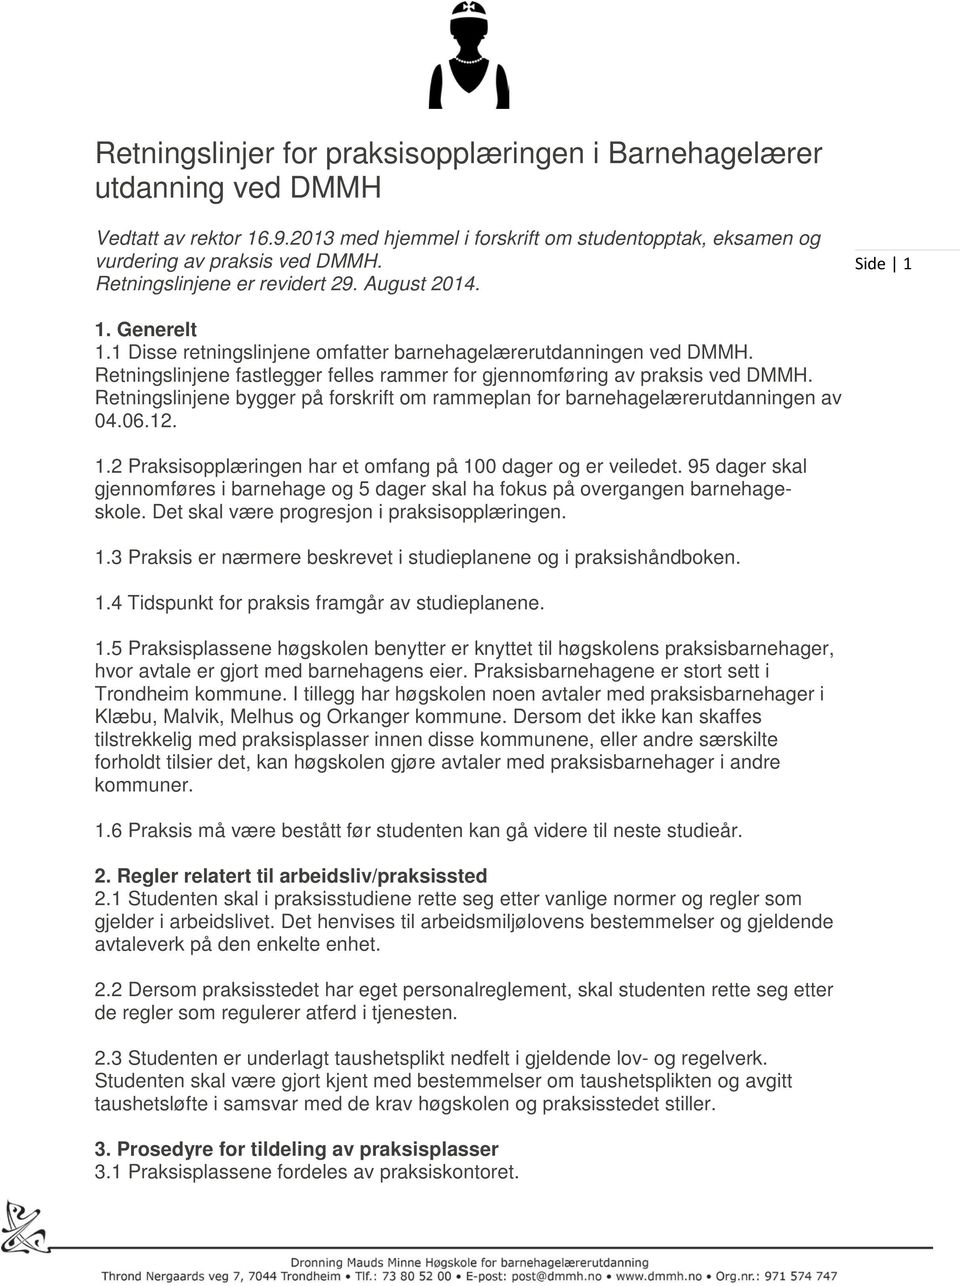 Retningslinjene fastlegger felles rammer for gjennomføring av praksis ved DMMH. Retningslinjene bygger på forskrift om rammeplan for barnehagelærerutdanningen av 04.06.12. 1.